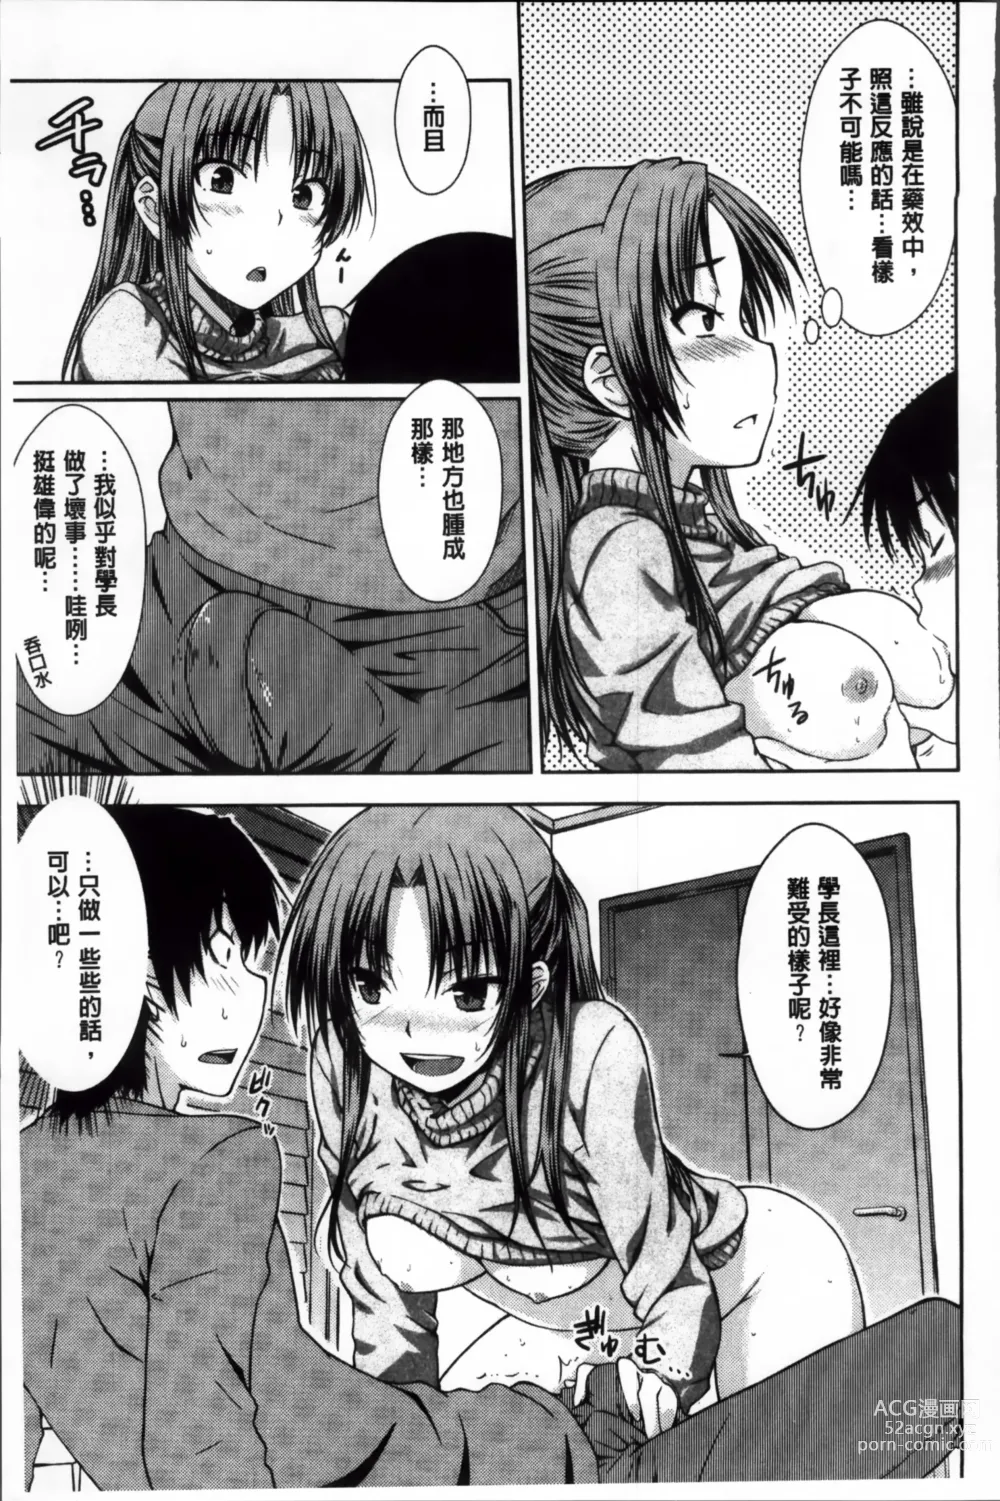 Page 205 of manga Gentei Kanojo